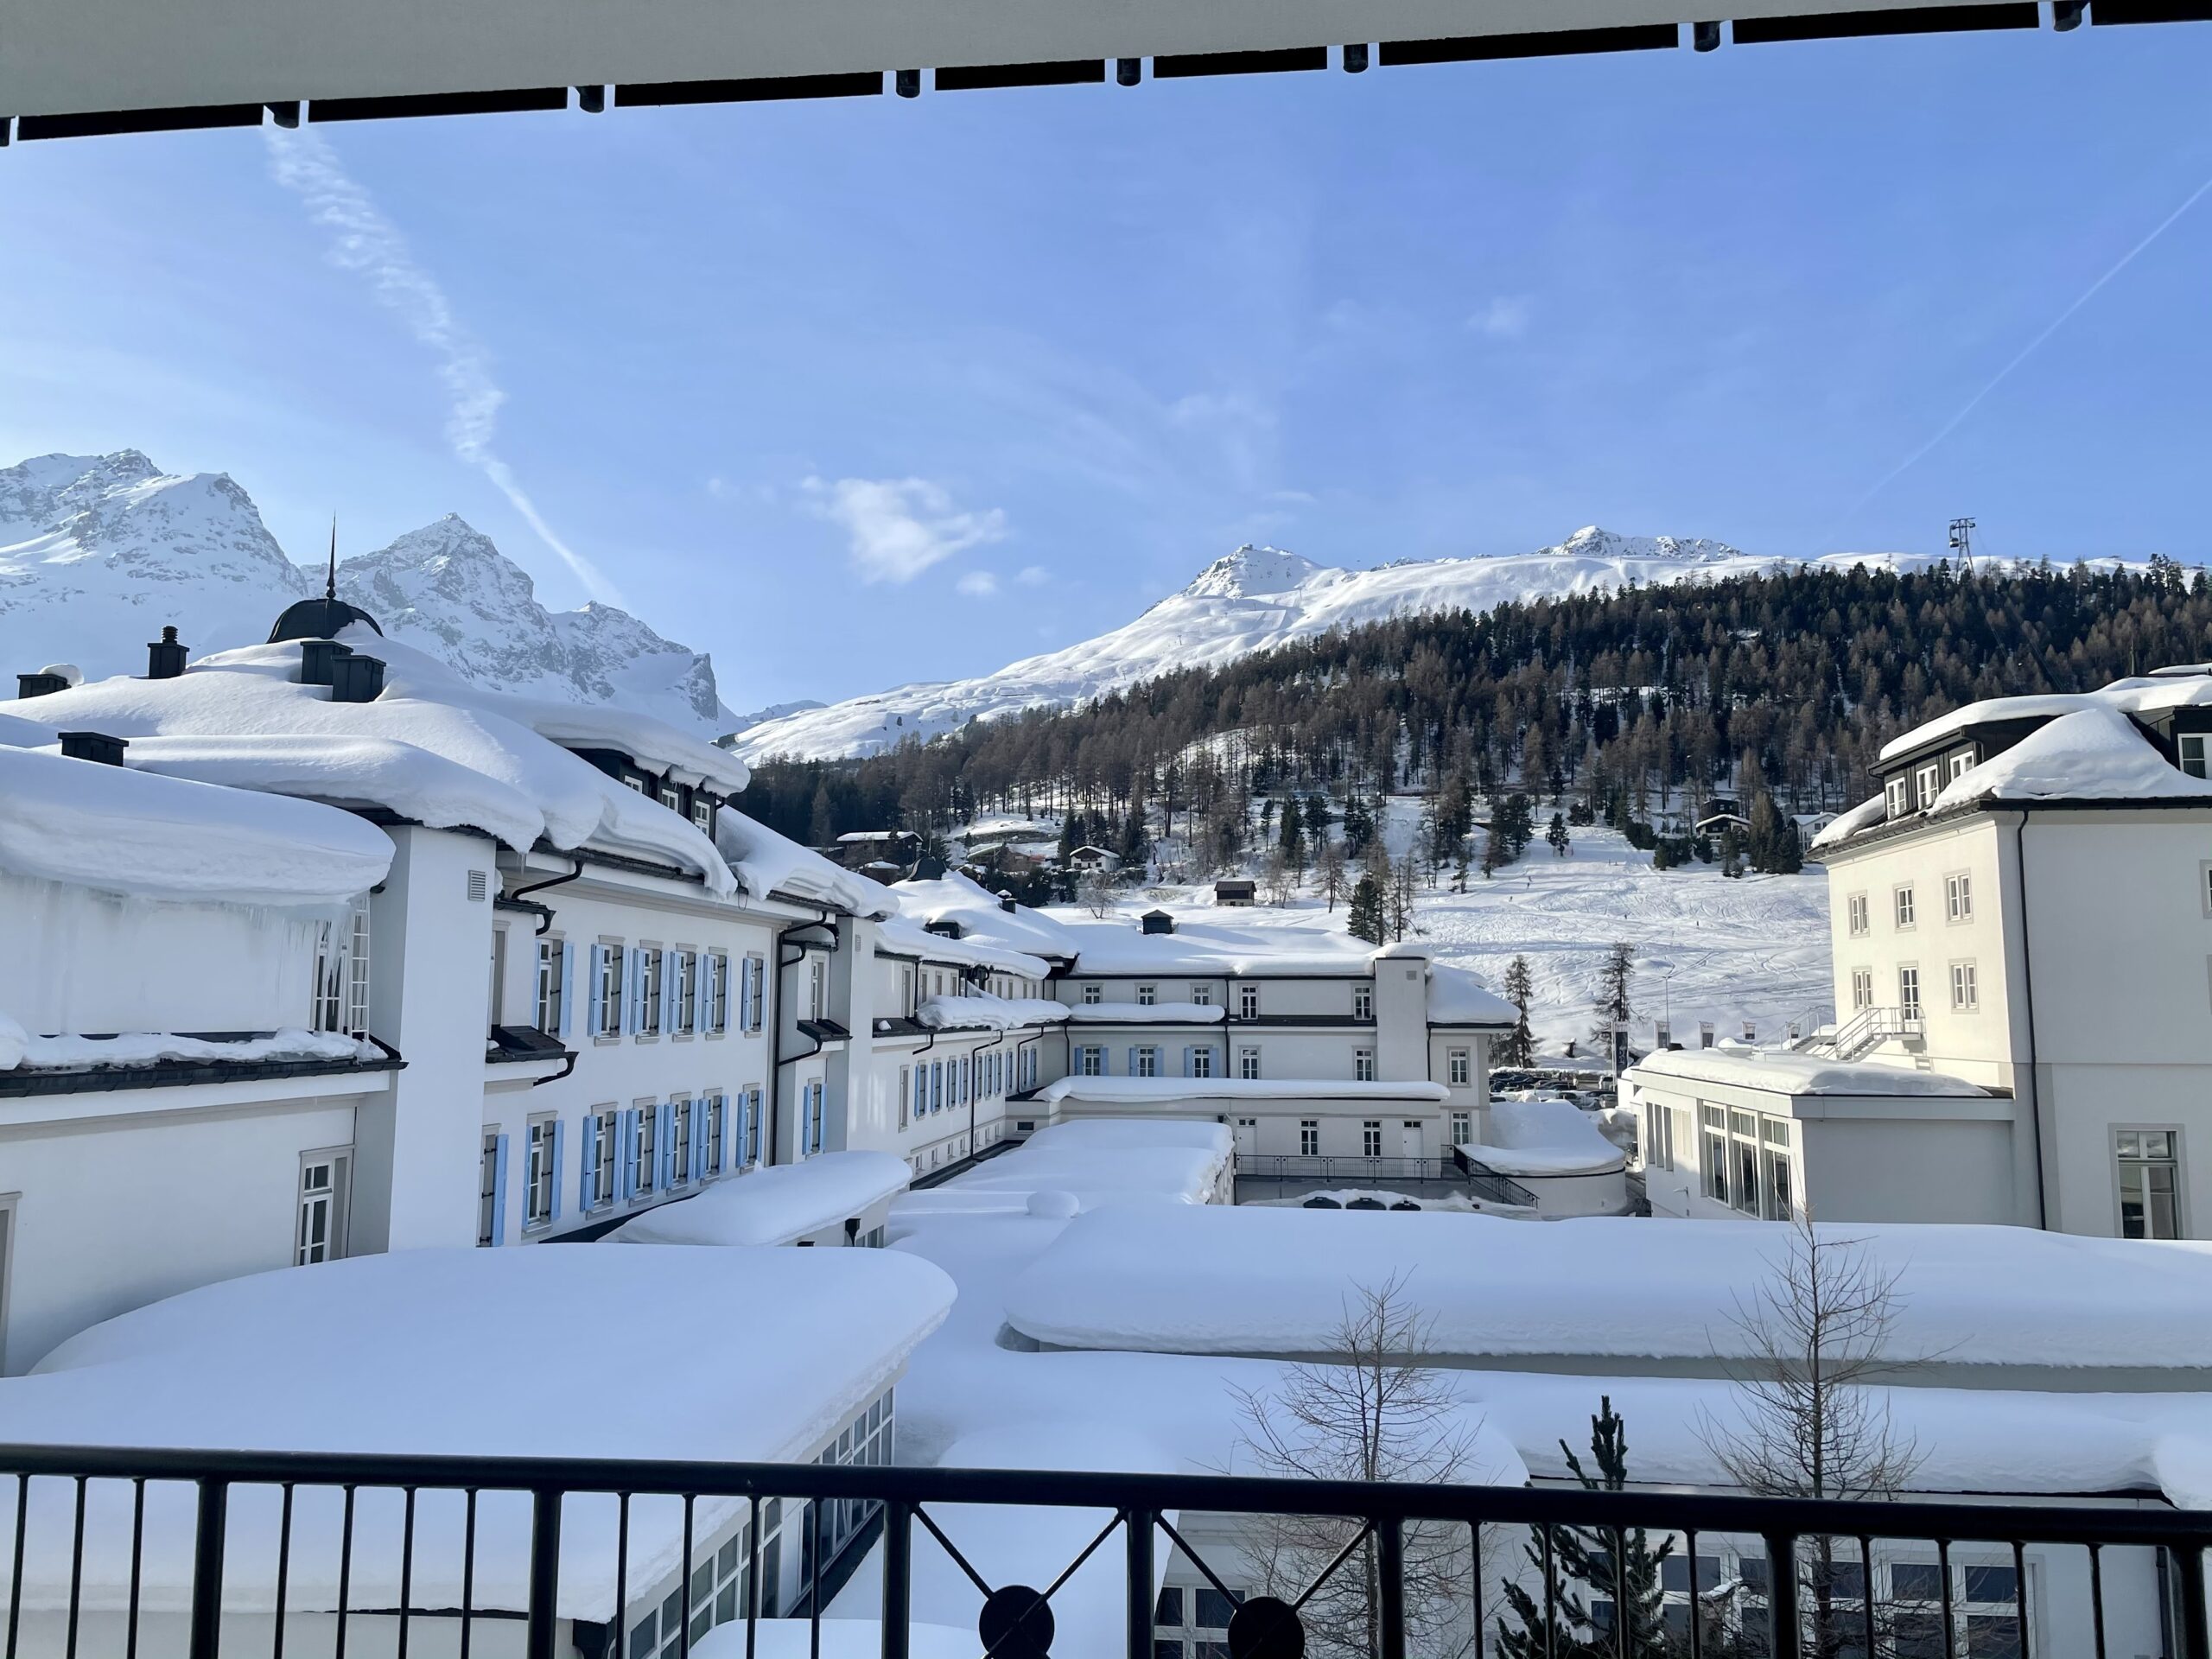 Kempinski grand hotel des bains St Moritz